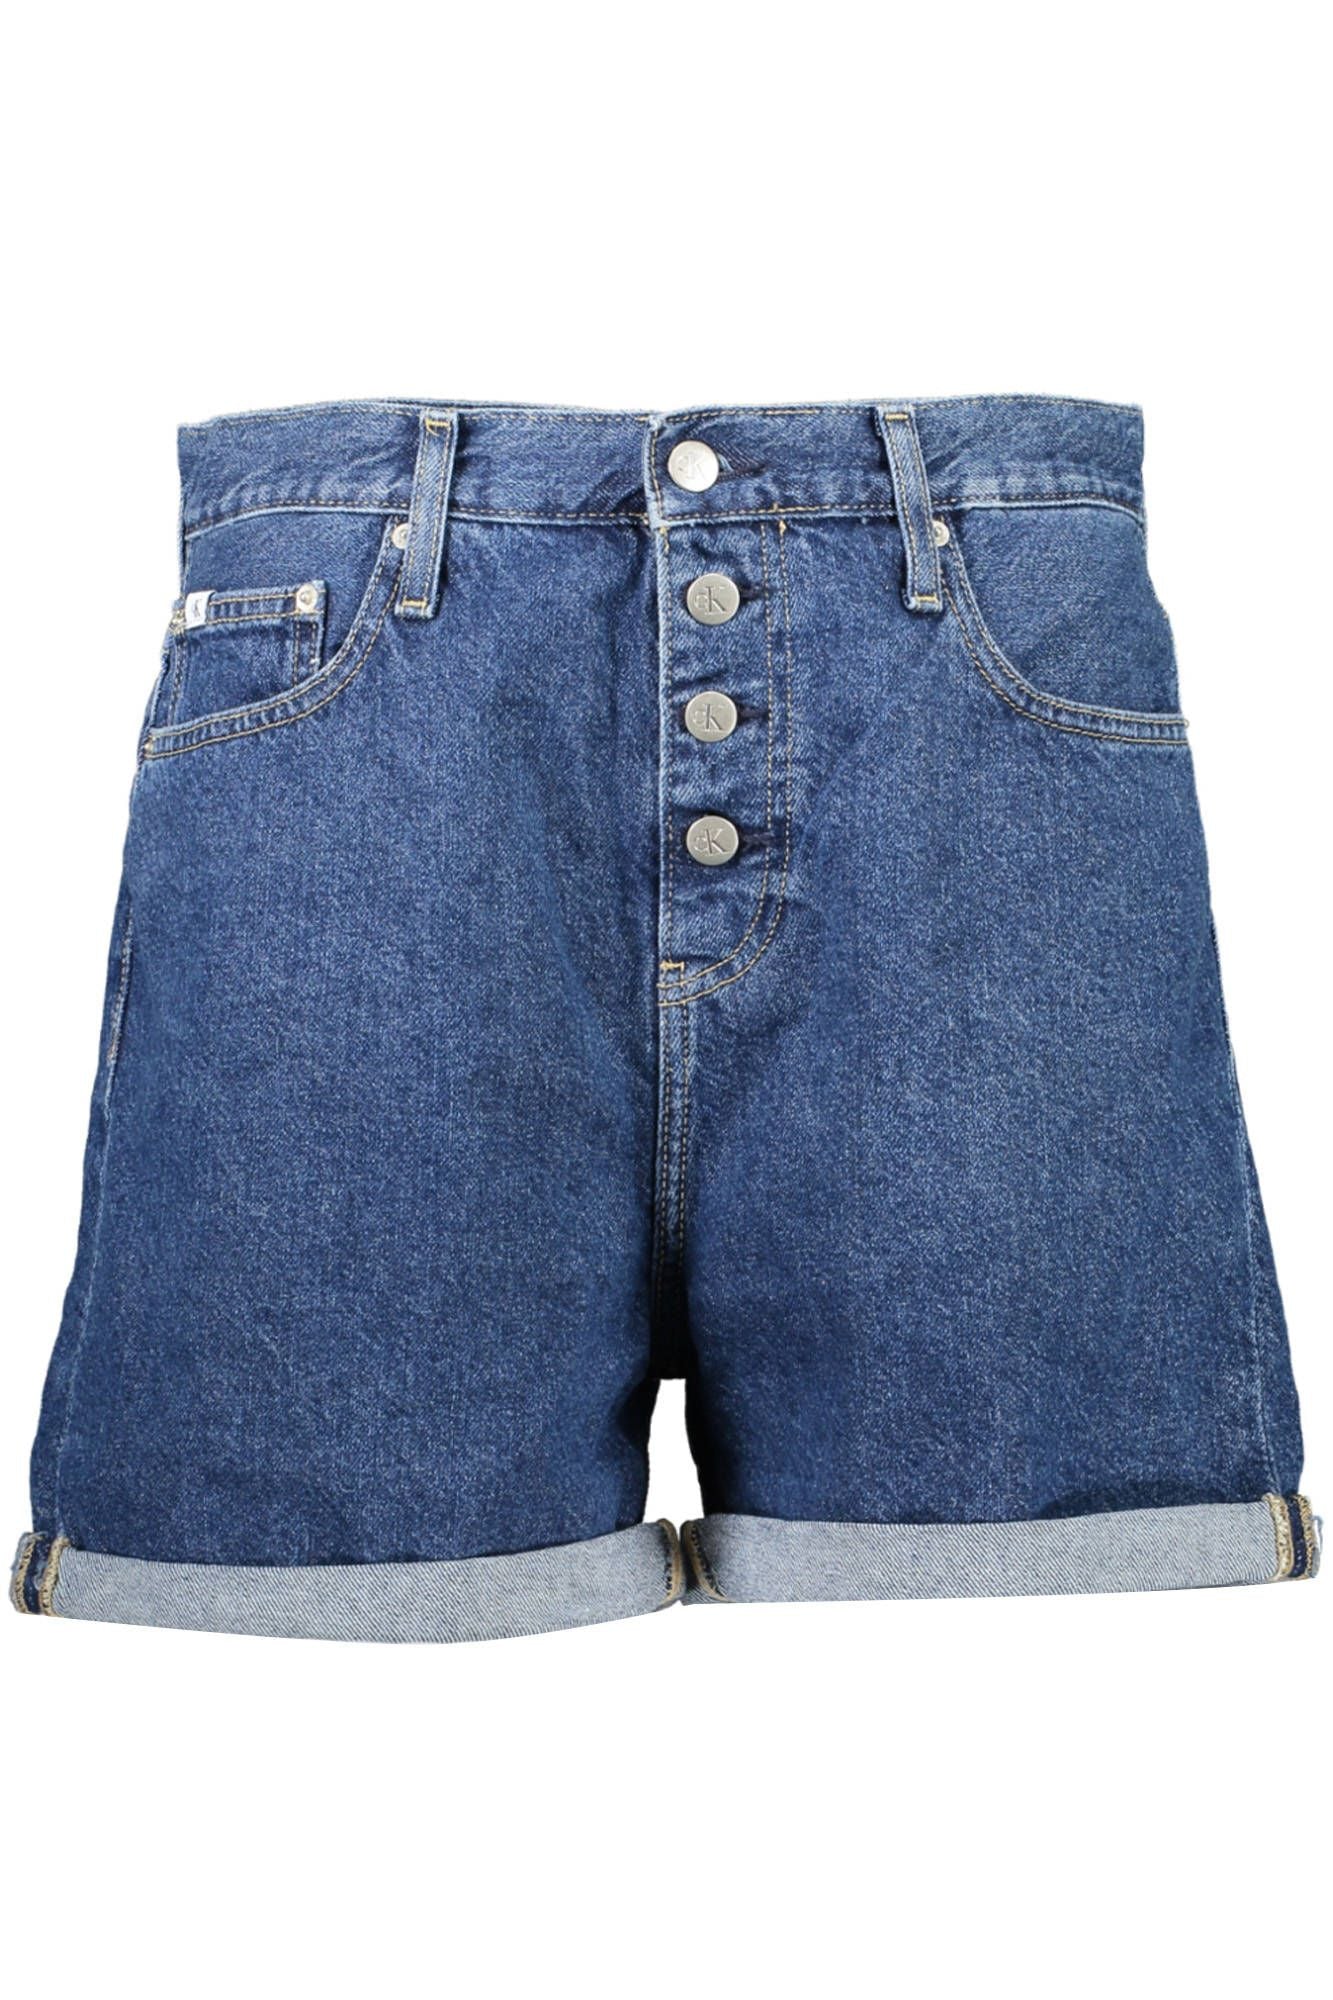 Calvin Klein  Blue Cotton Jeans & Pant